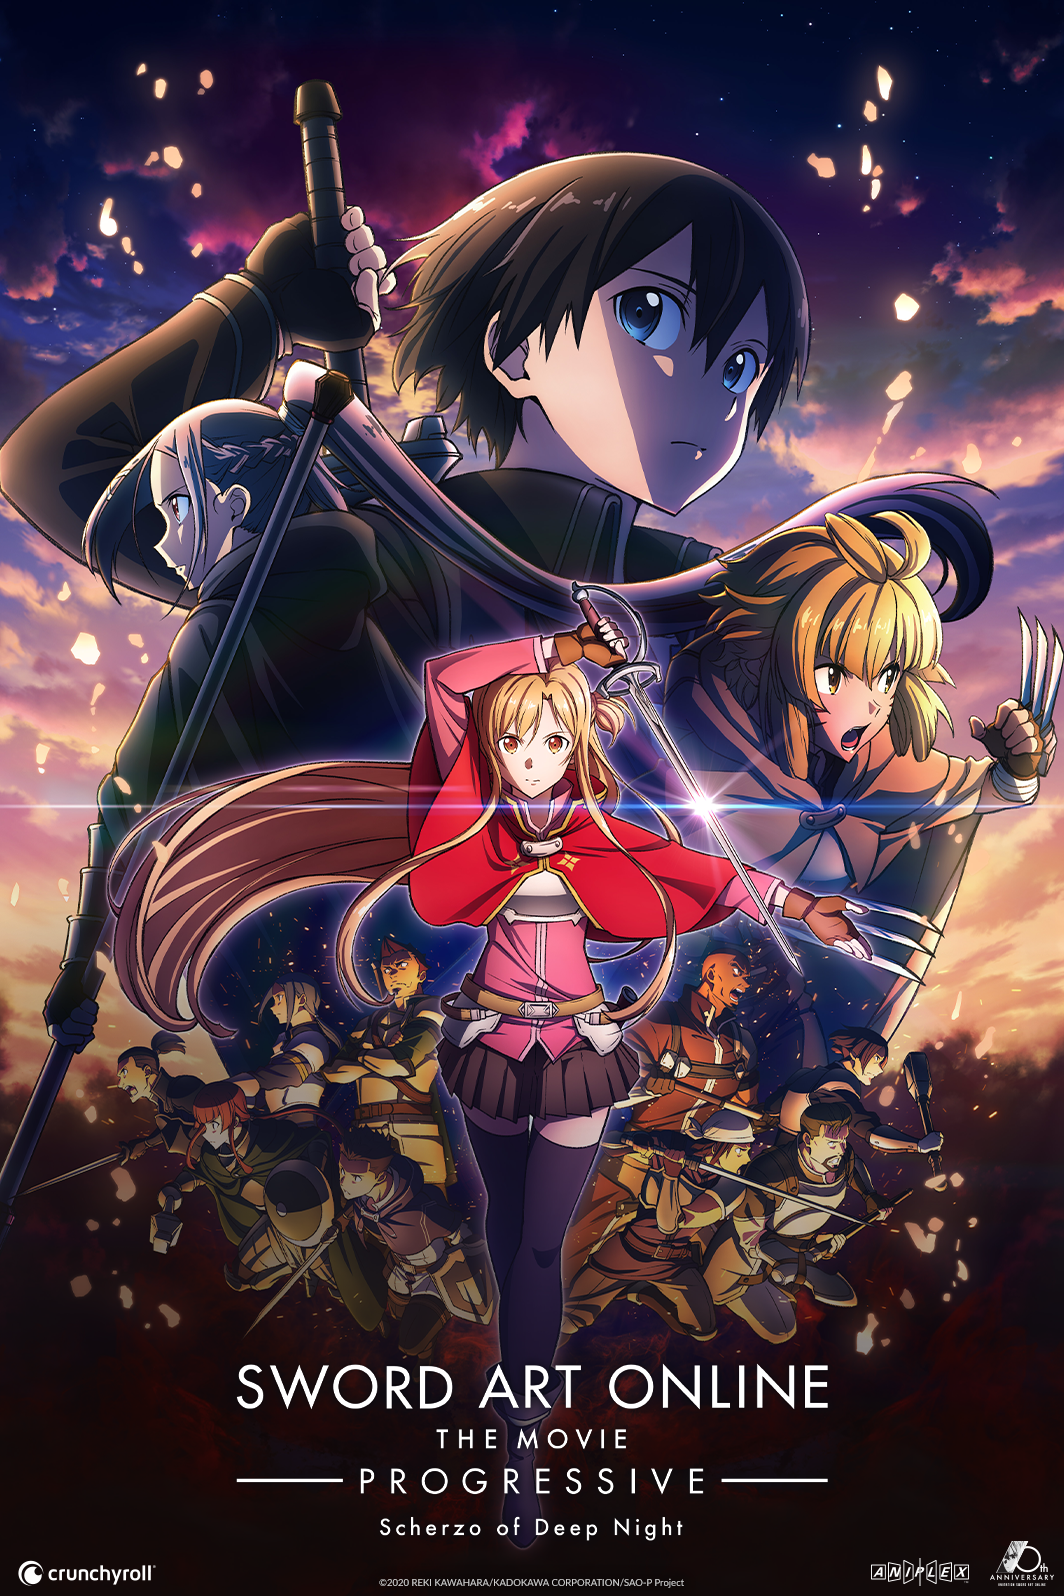 El anime DAKAICHI tendrá una película que cubrirá el arco de España de la  historia - Crunchyroll Noticias